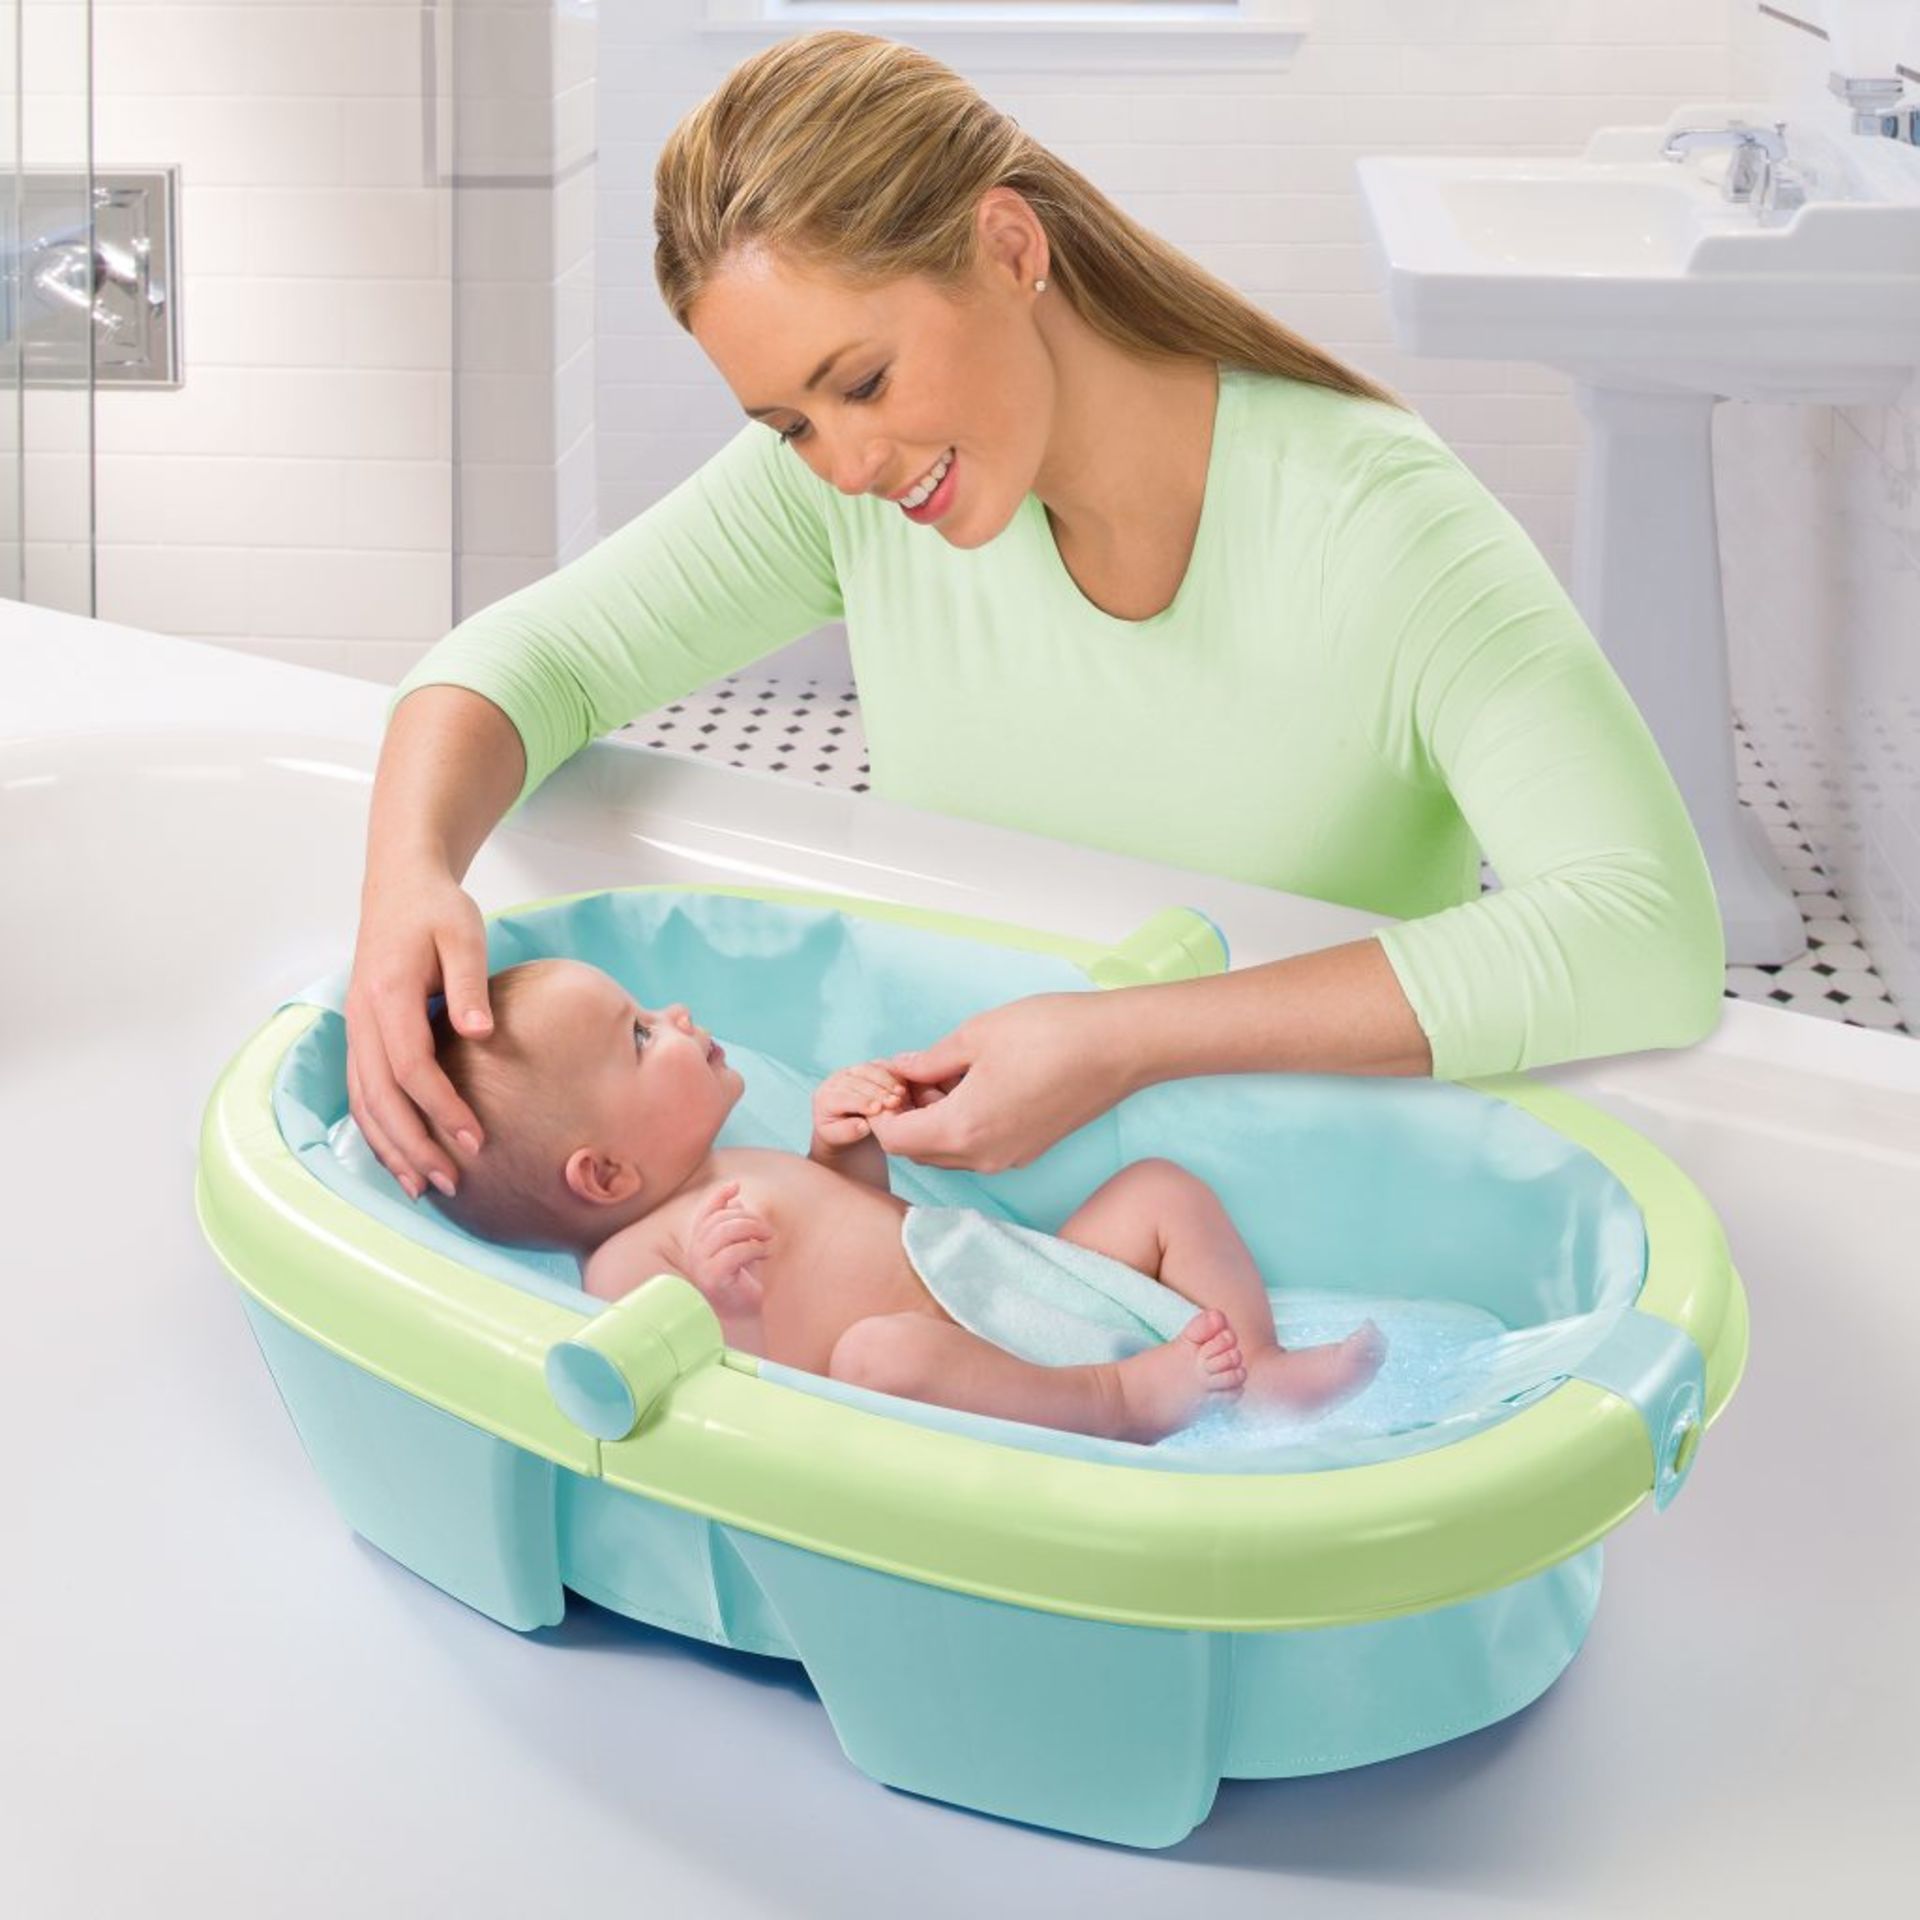 Что нужно для ванночки. Ванночка Summer Infant складная. Ванночка для новорожденных. Ванночка для купания младенца. Младенец в ванночке.